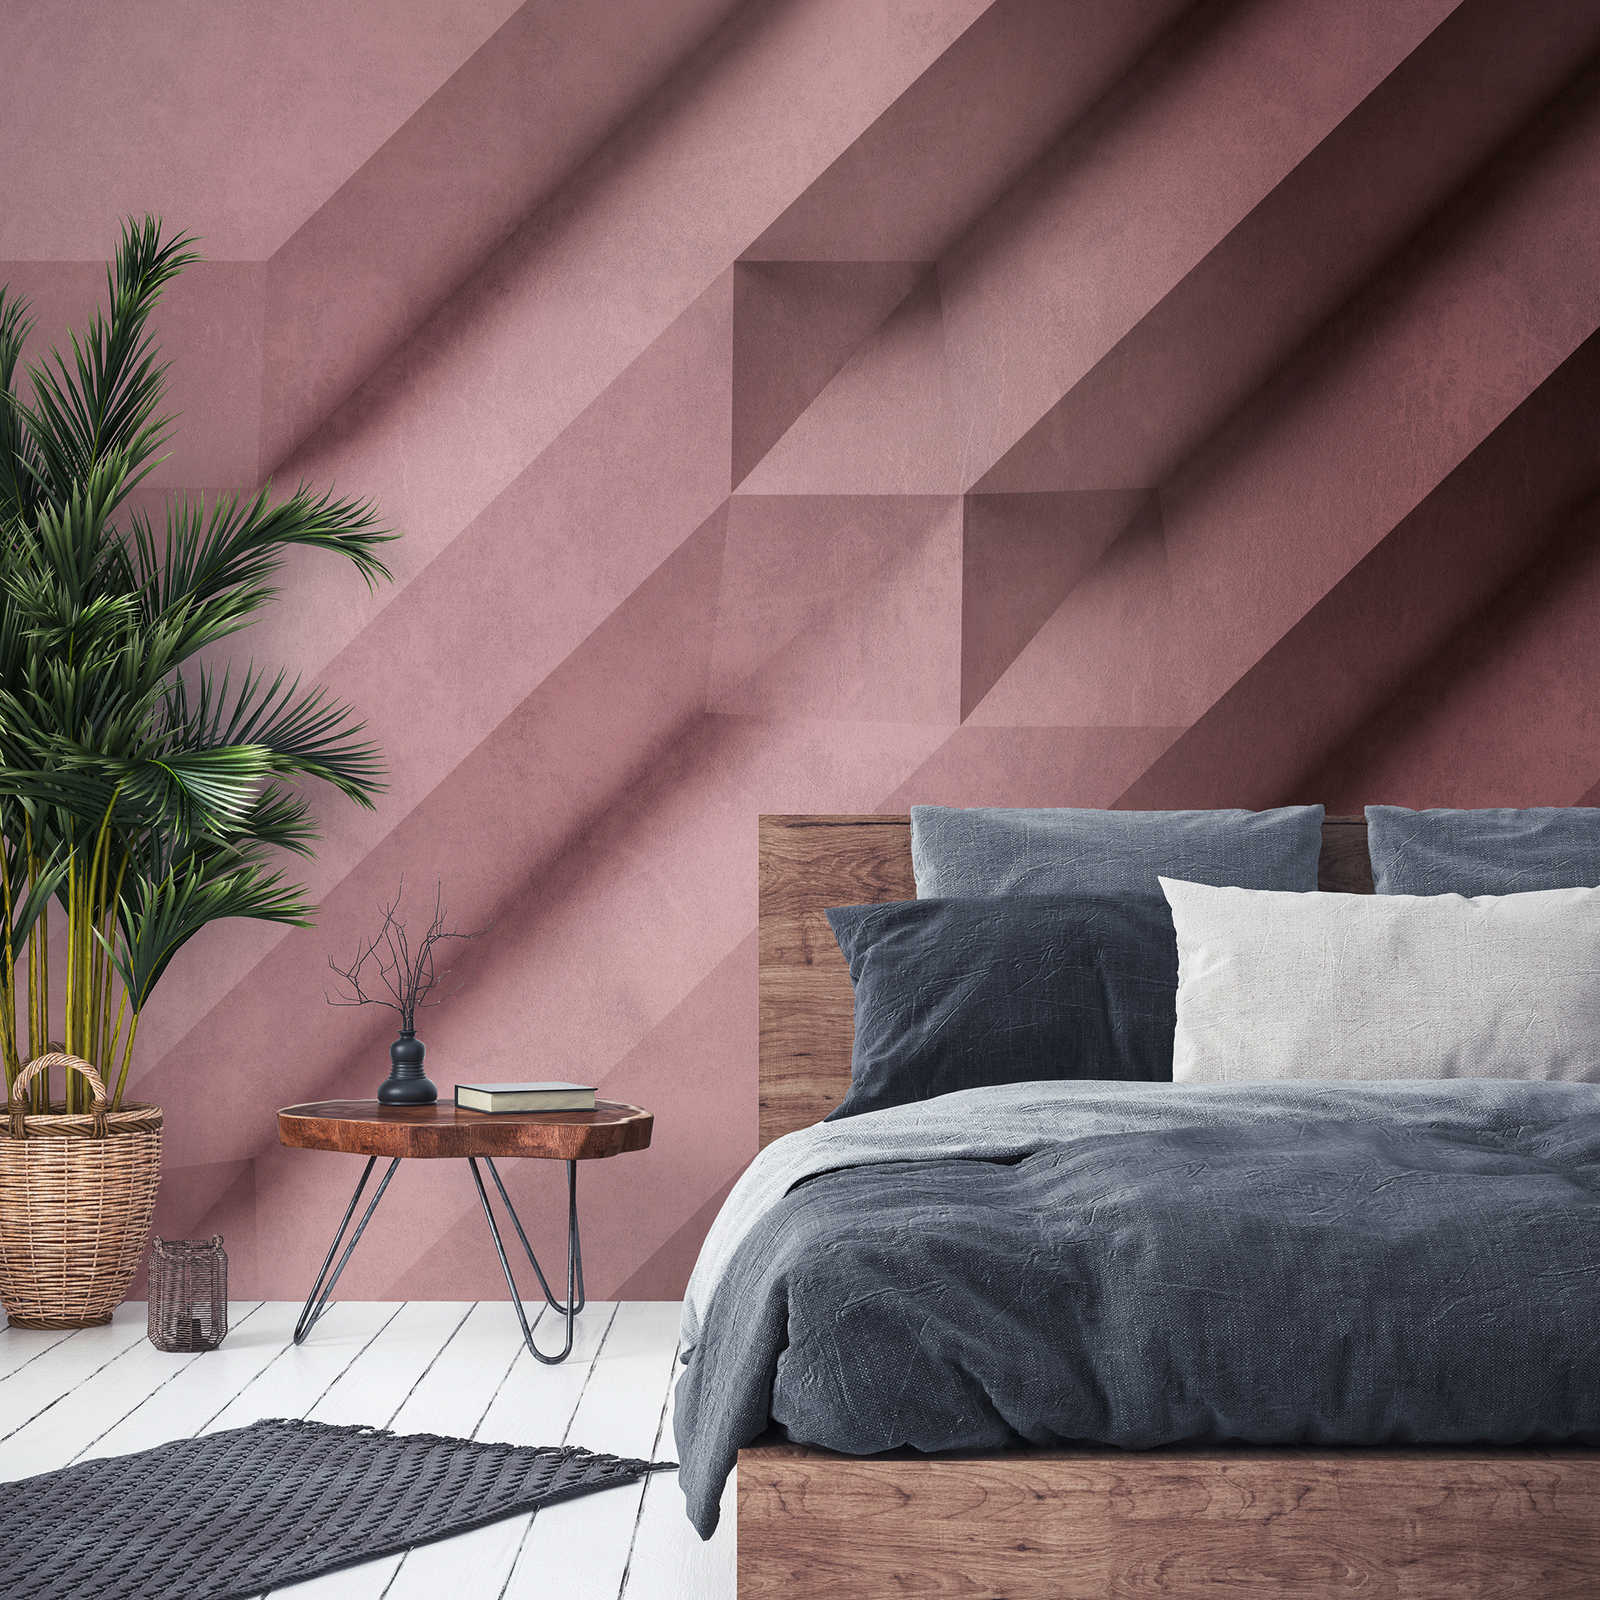 Behang noviteit - 3D motief behang betonlook in rosé
